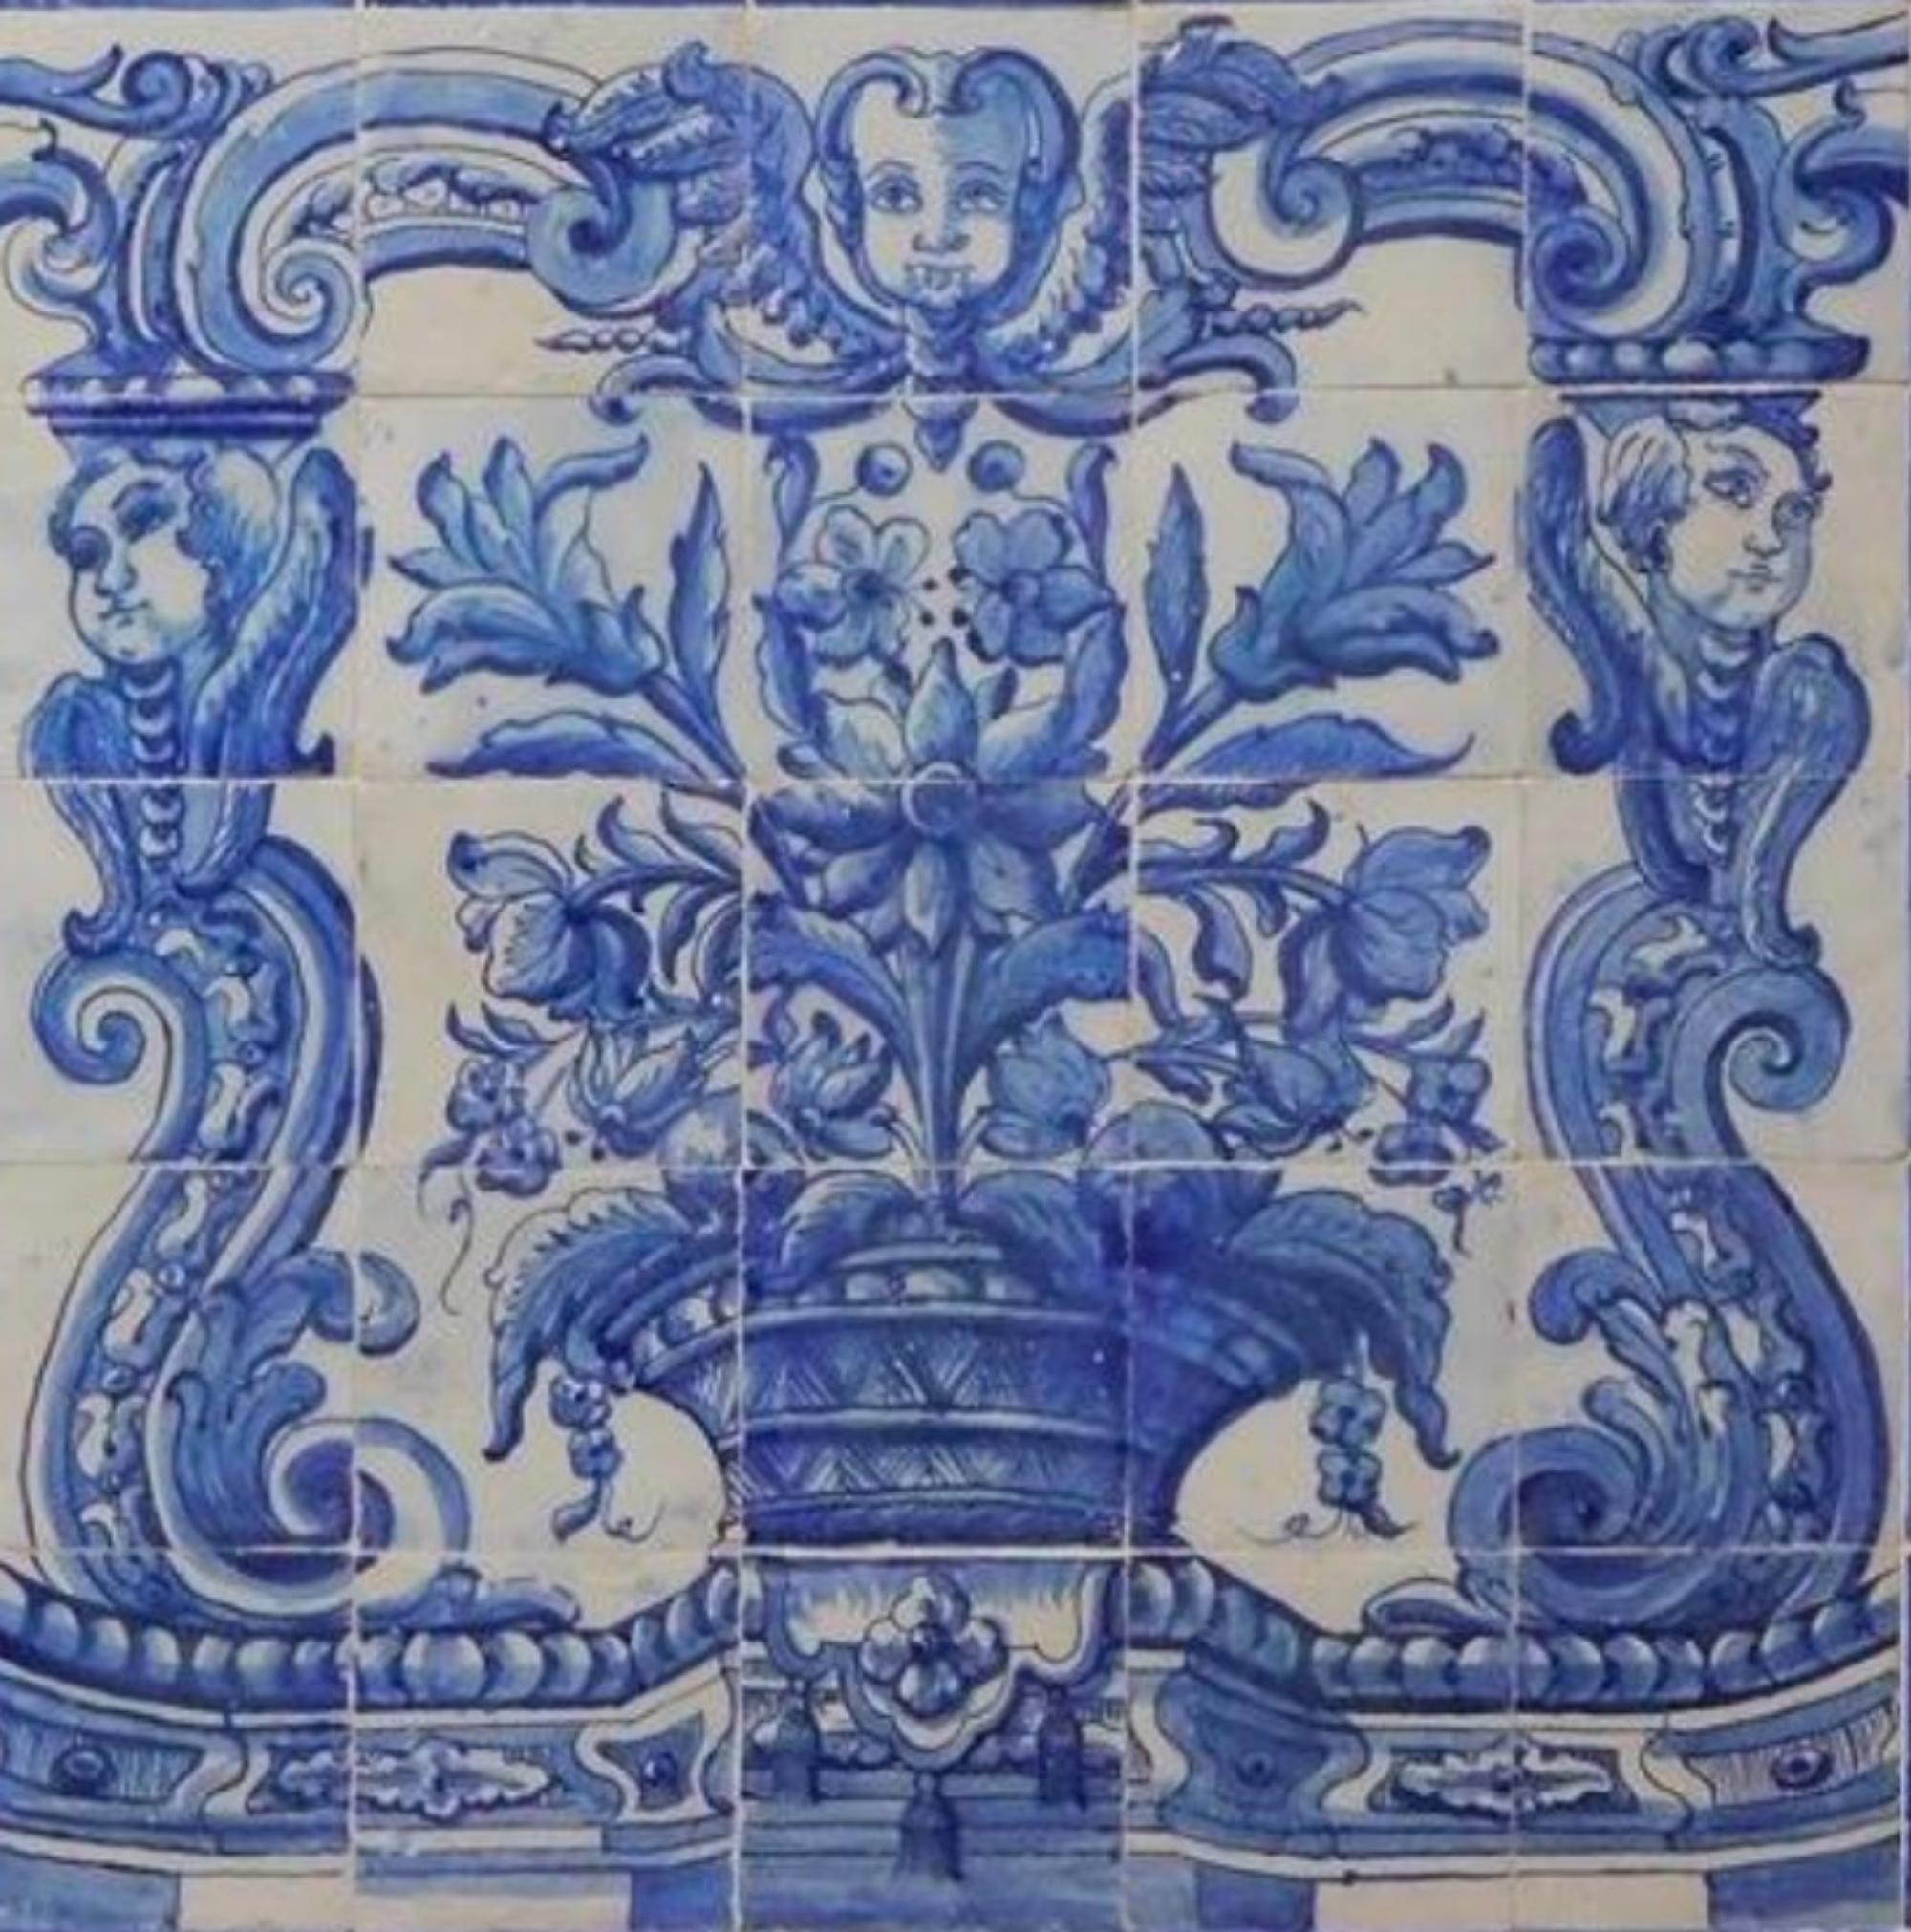 Vase portugais du 18e siècle 
Mesures : 131cm x 131cm
110 carreaux

Note importante : Ce panneau est avec les tuiles restaurées du 18ème siècle.
Le panneau est livré comme s'il s'agissait d'un tableau avec un squelette en bois afin que les